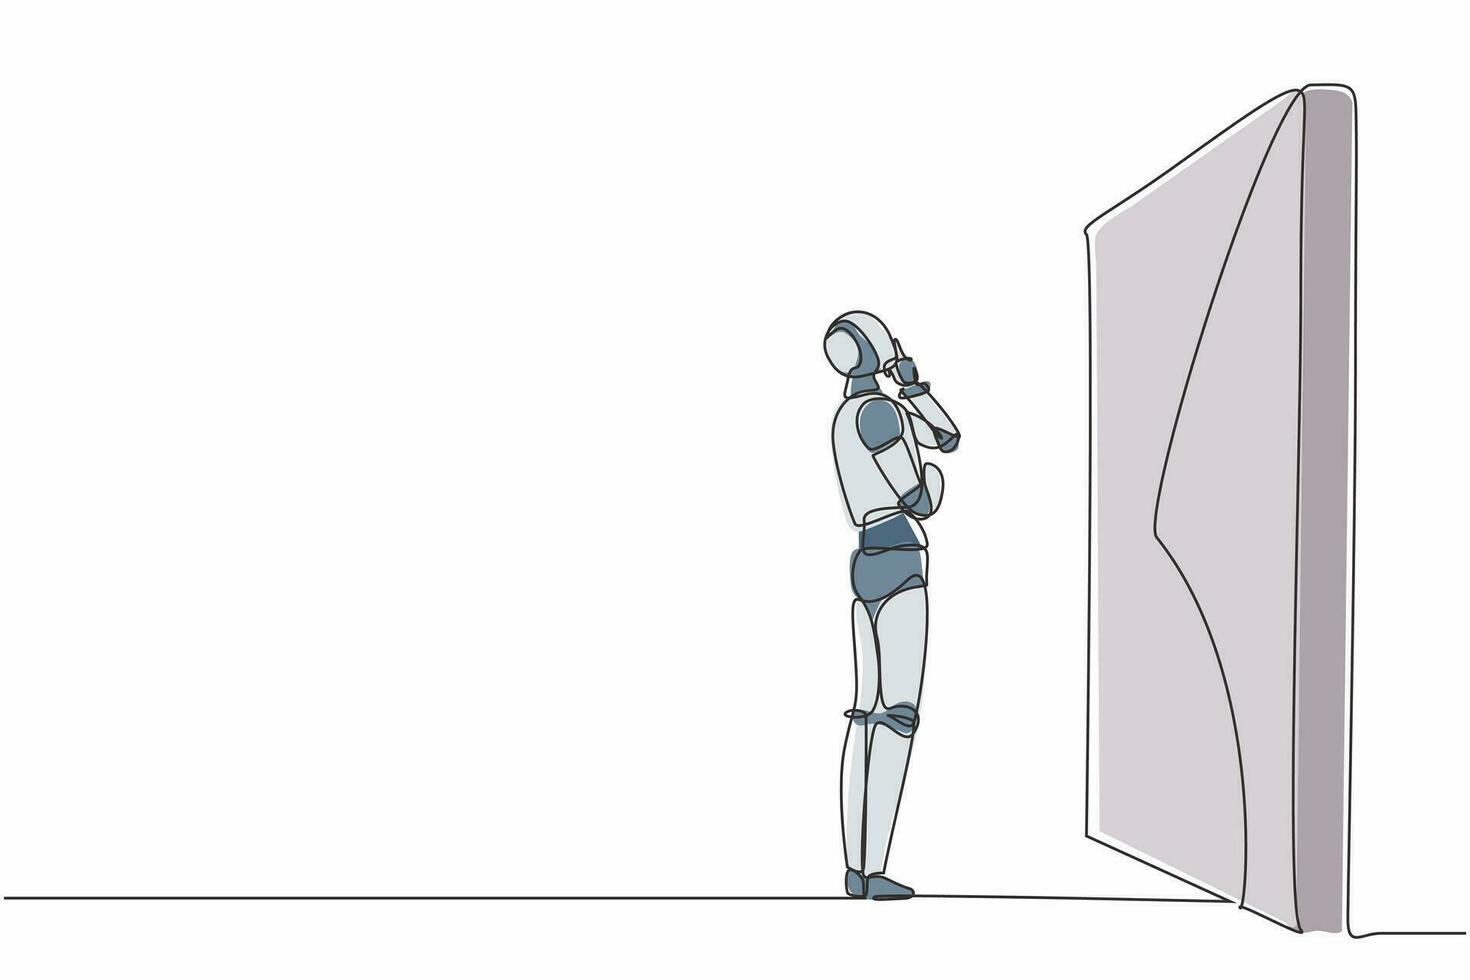 robot de dibujo de una sola línea continua pensando frente a un gran obstáculo o pared. Inteligencia artificial robótica moderna. industria de la tecnología electrónica. ilustración de vector de diseño gráfico de dibujo de una línea